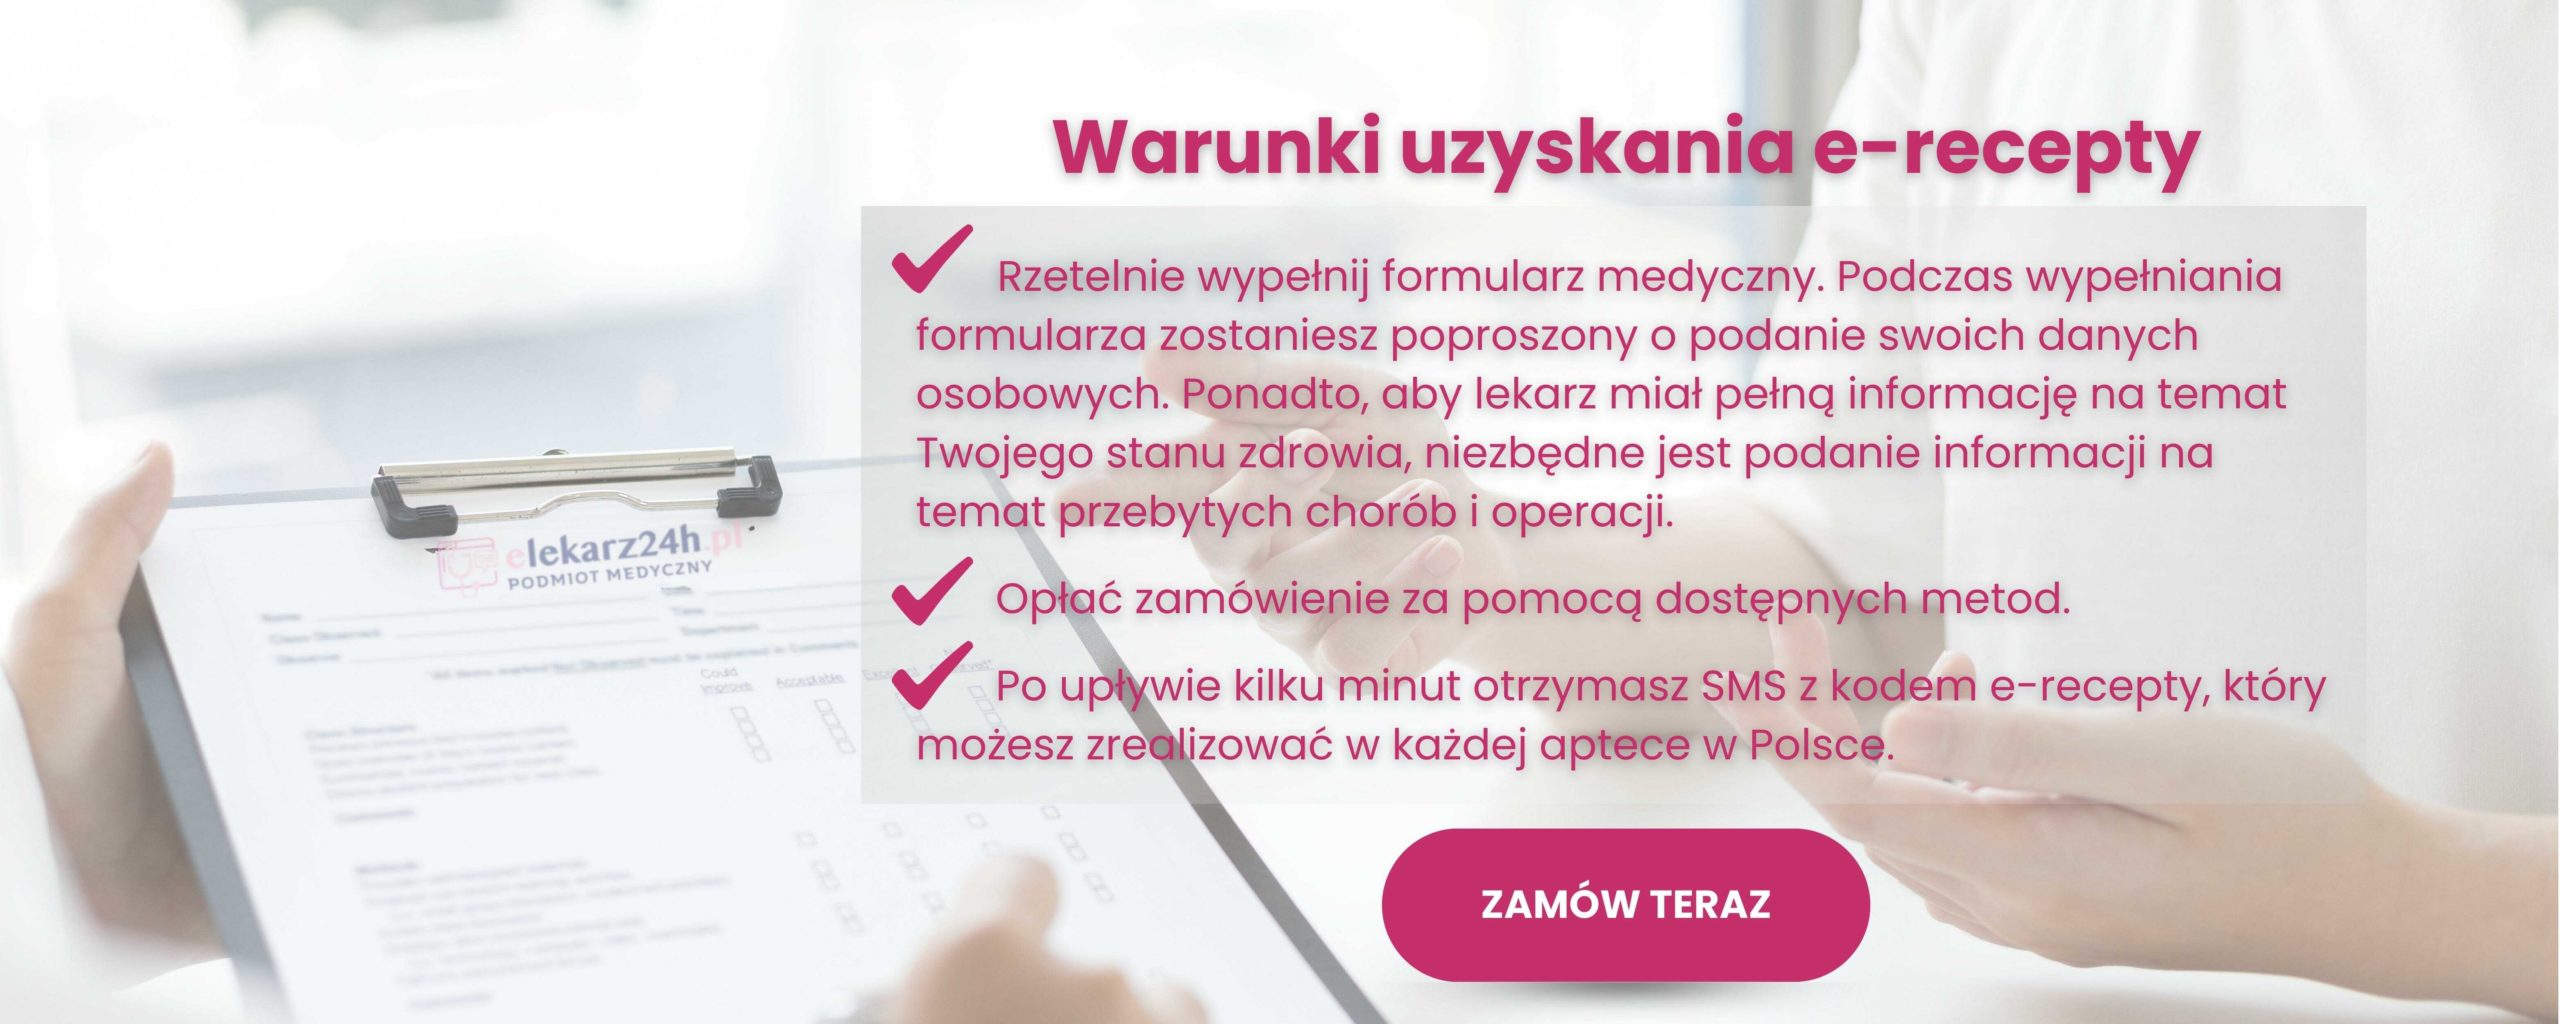 warunki uzyskania e-recepty w serwisie e-lekarz24h.pl